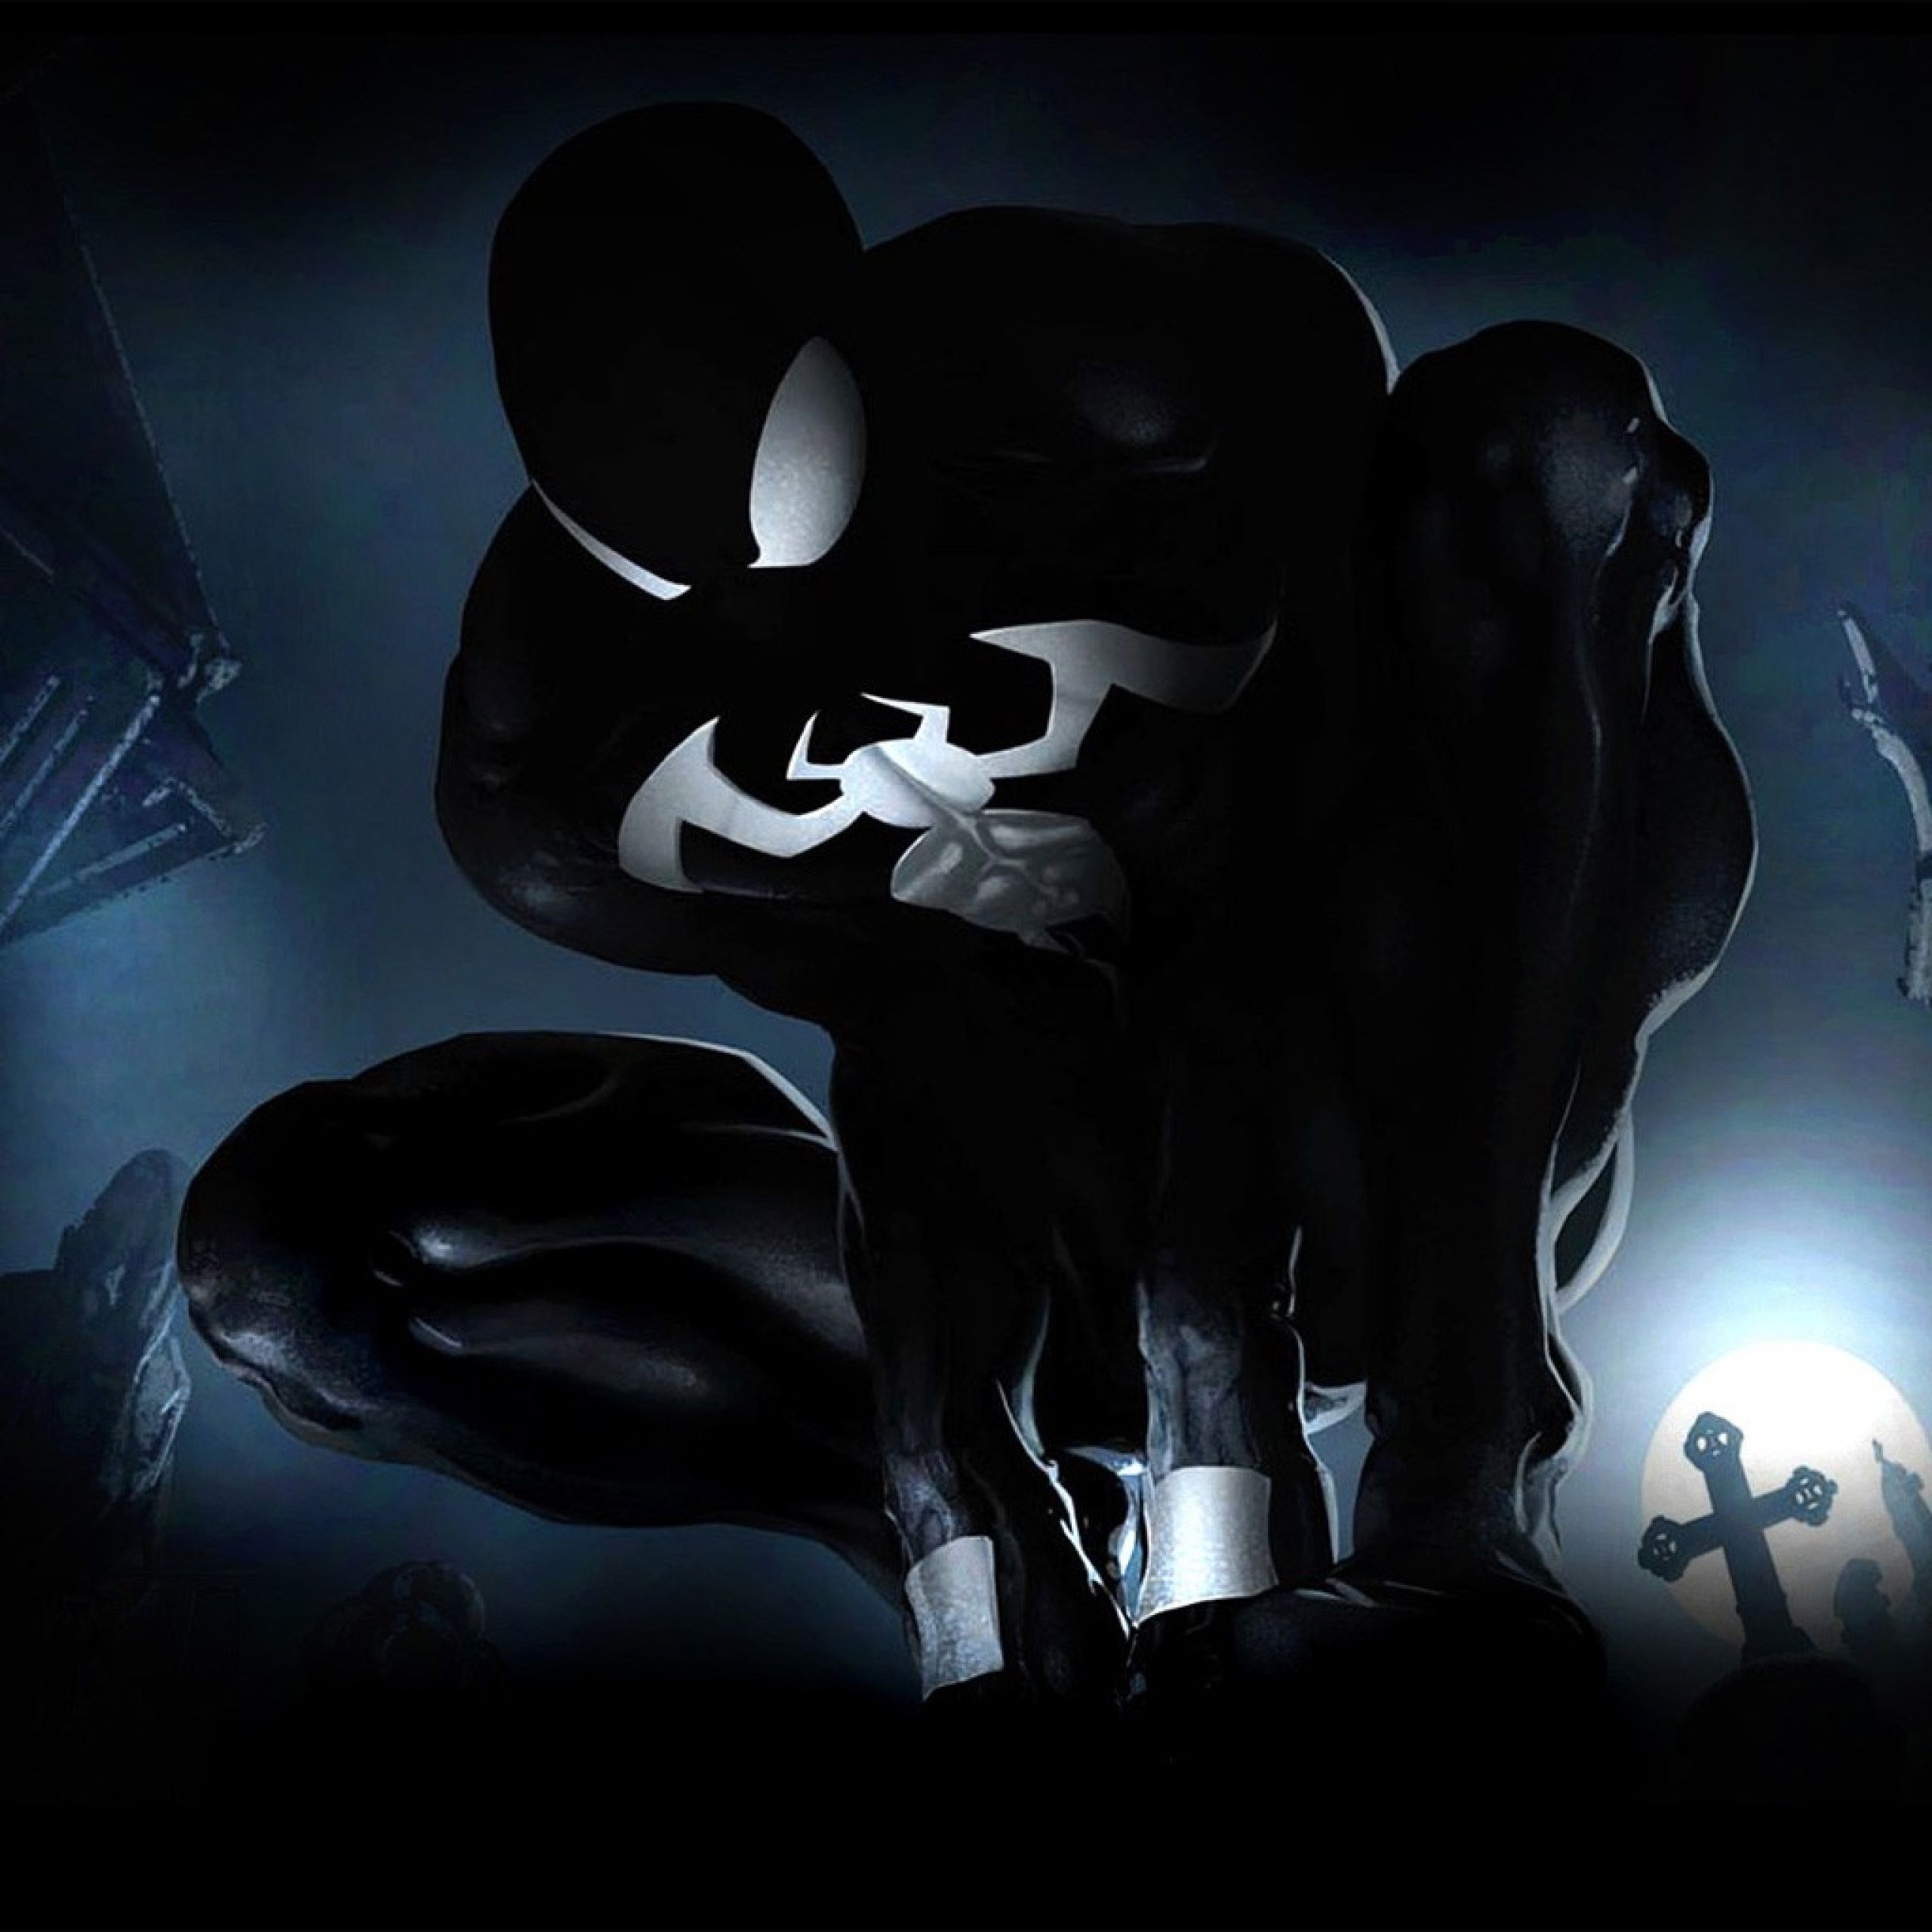 fond d'écran marvel venom,ténèbres,personnage fictif,noir et blanc